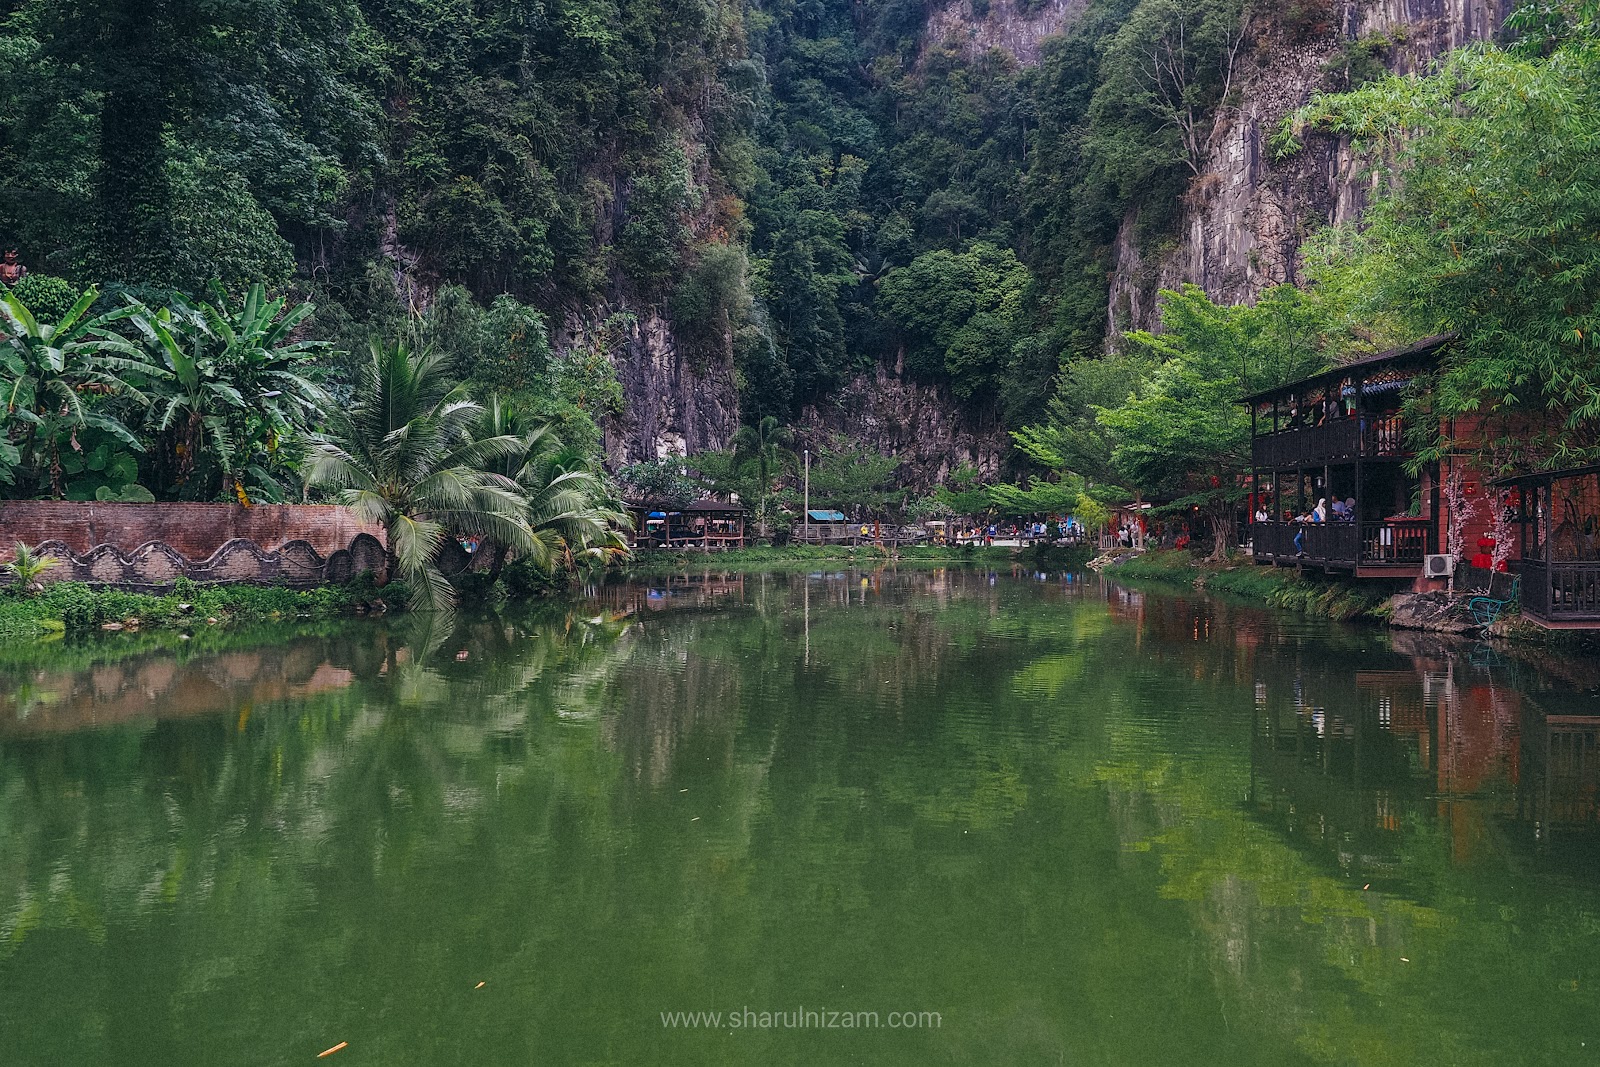 Ada Apa Di Qing Xin Ling Leisure & Cultural Village Di Ipoh, Perak?